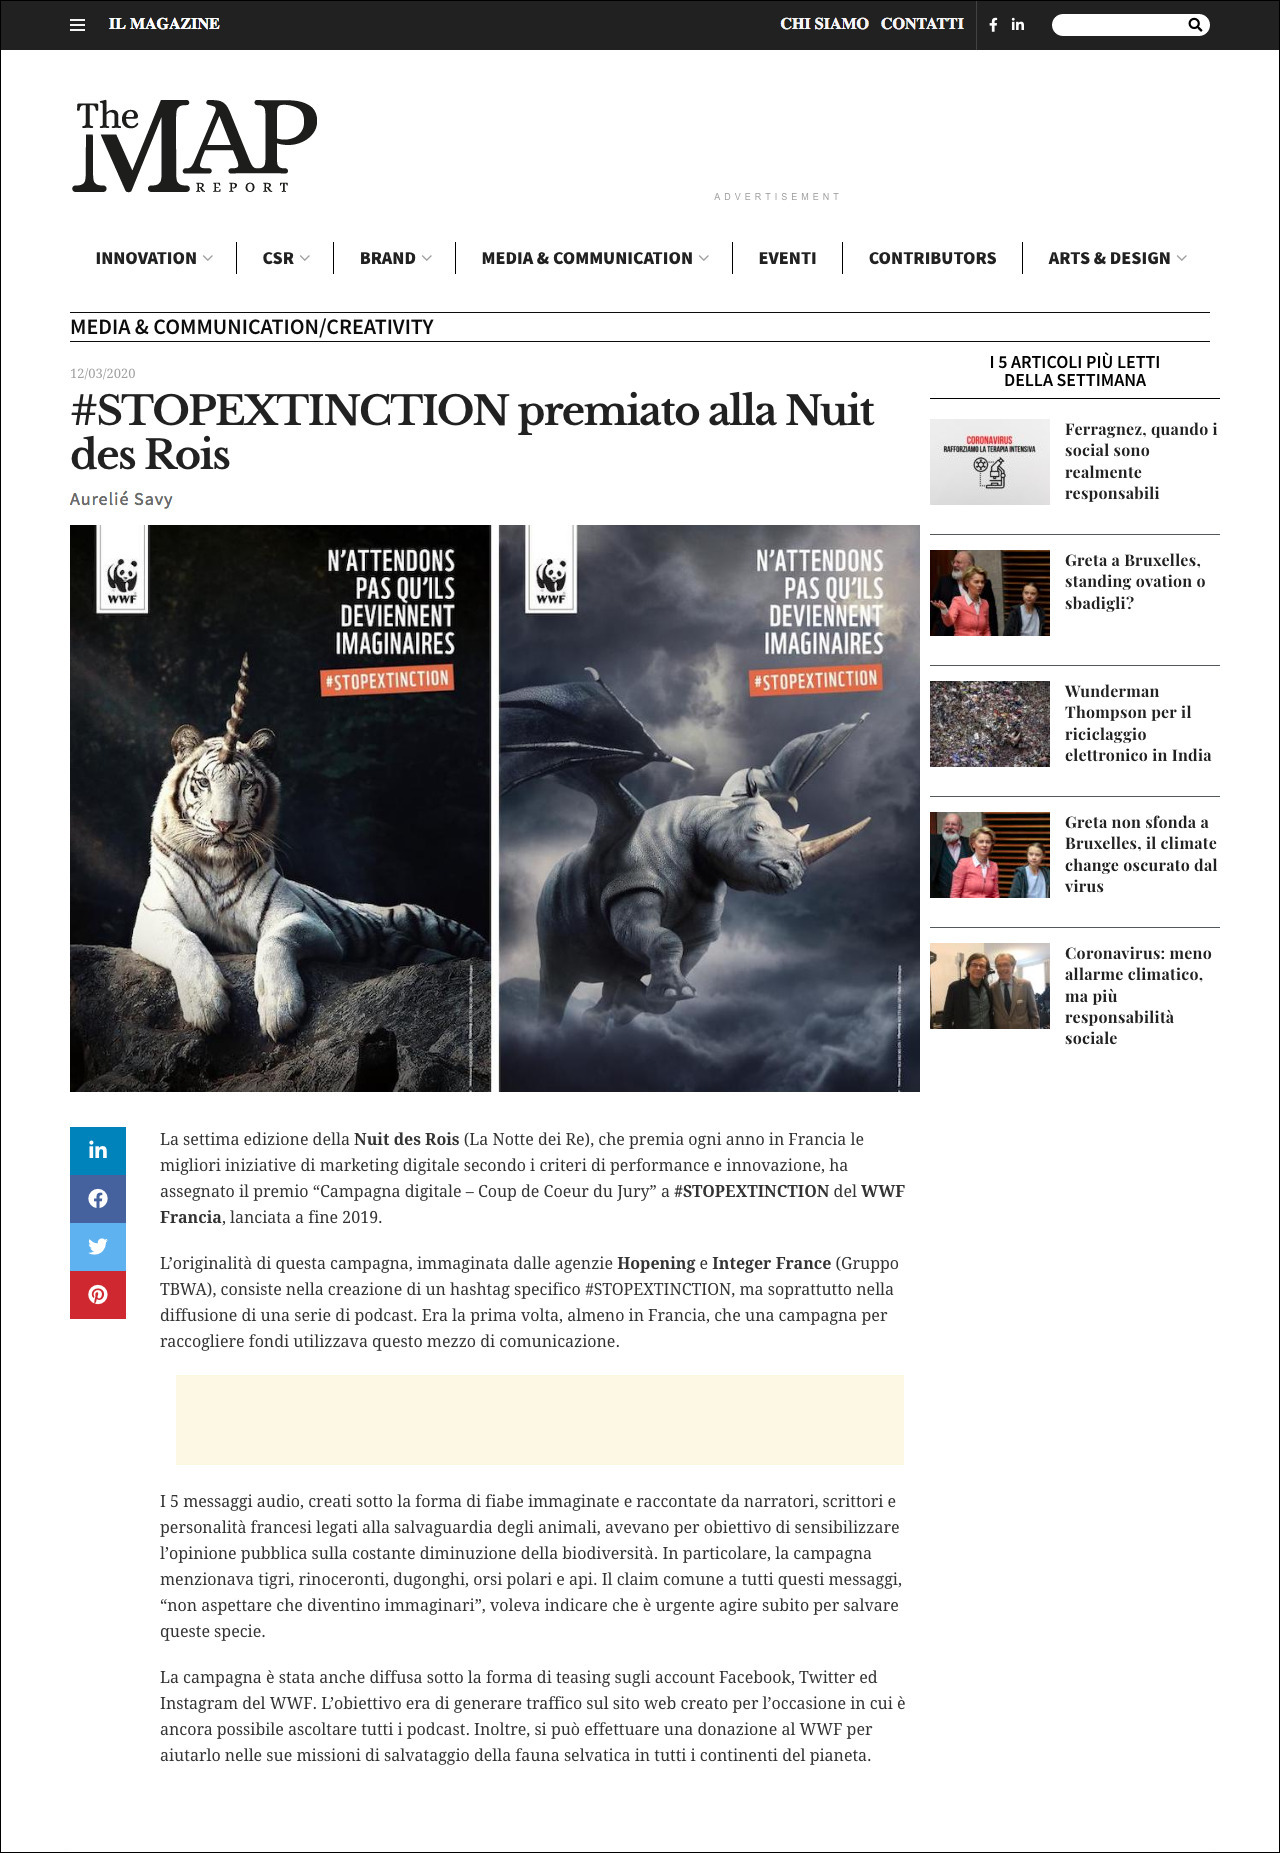 Aurélie Savy per The Map Report | #STOPEXTINCTION premiato alla Nuit des Rois